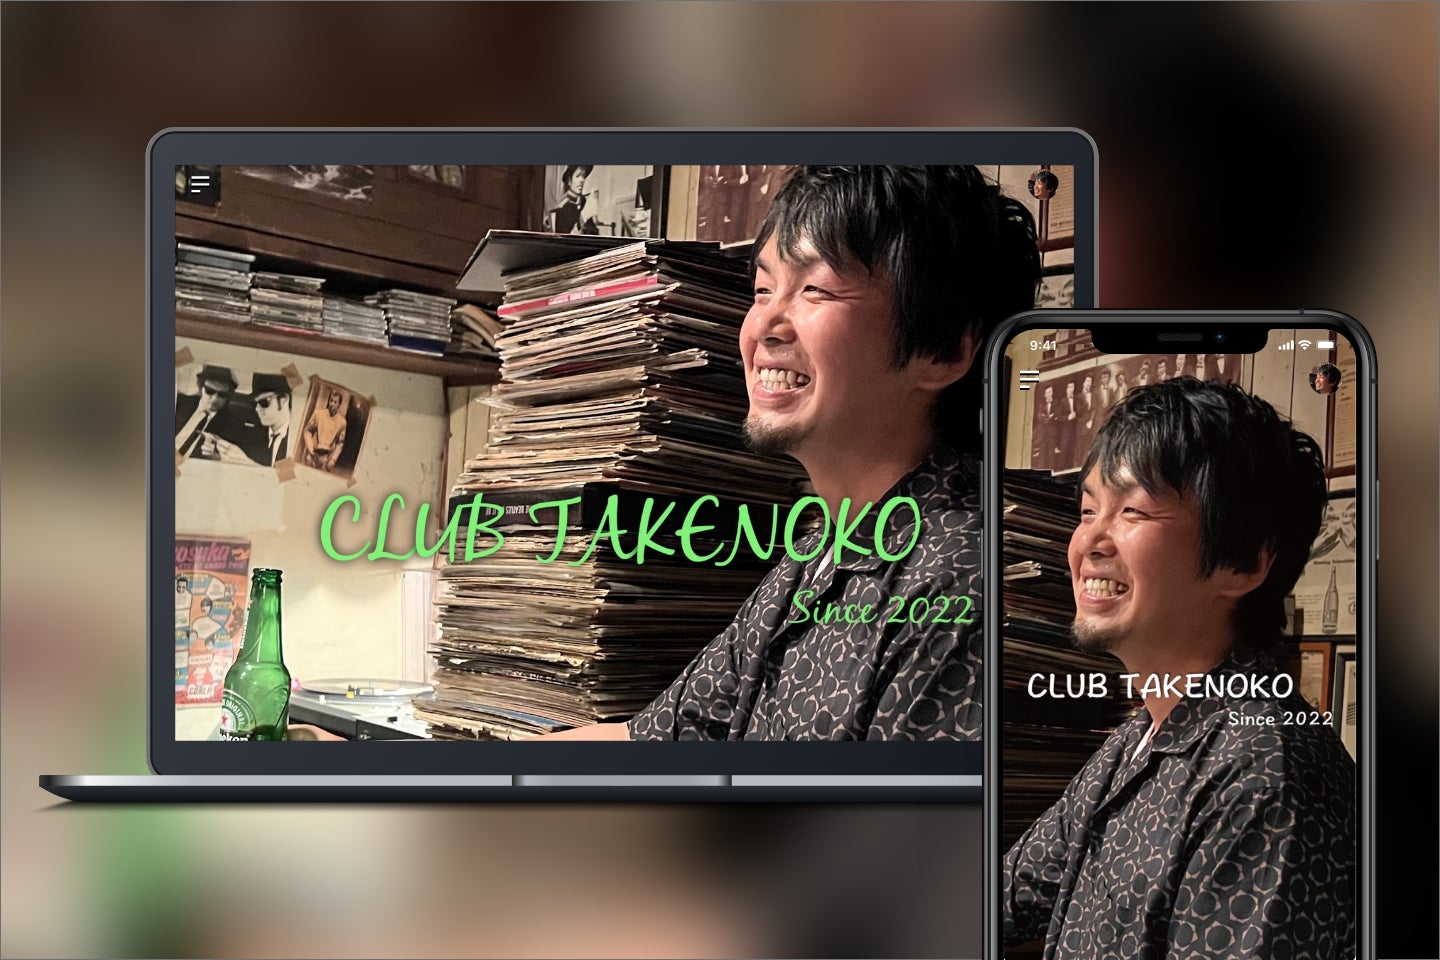 シンガー・ソング・ライター古澤剛のオフィシャルファンサイト「CLUB TAKENOKO」をオープン！7月から始まるライヴツアーのFC会員先行販売も6/5より販売開始！